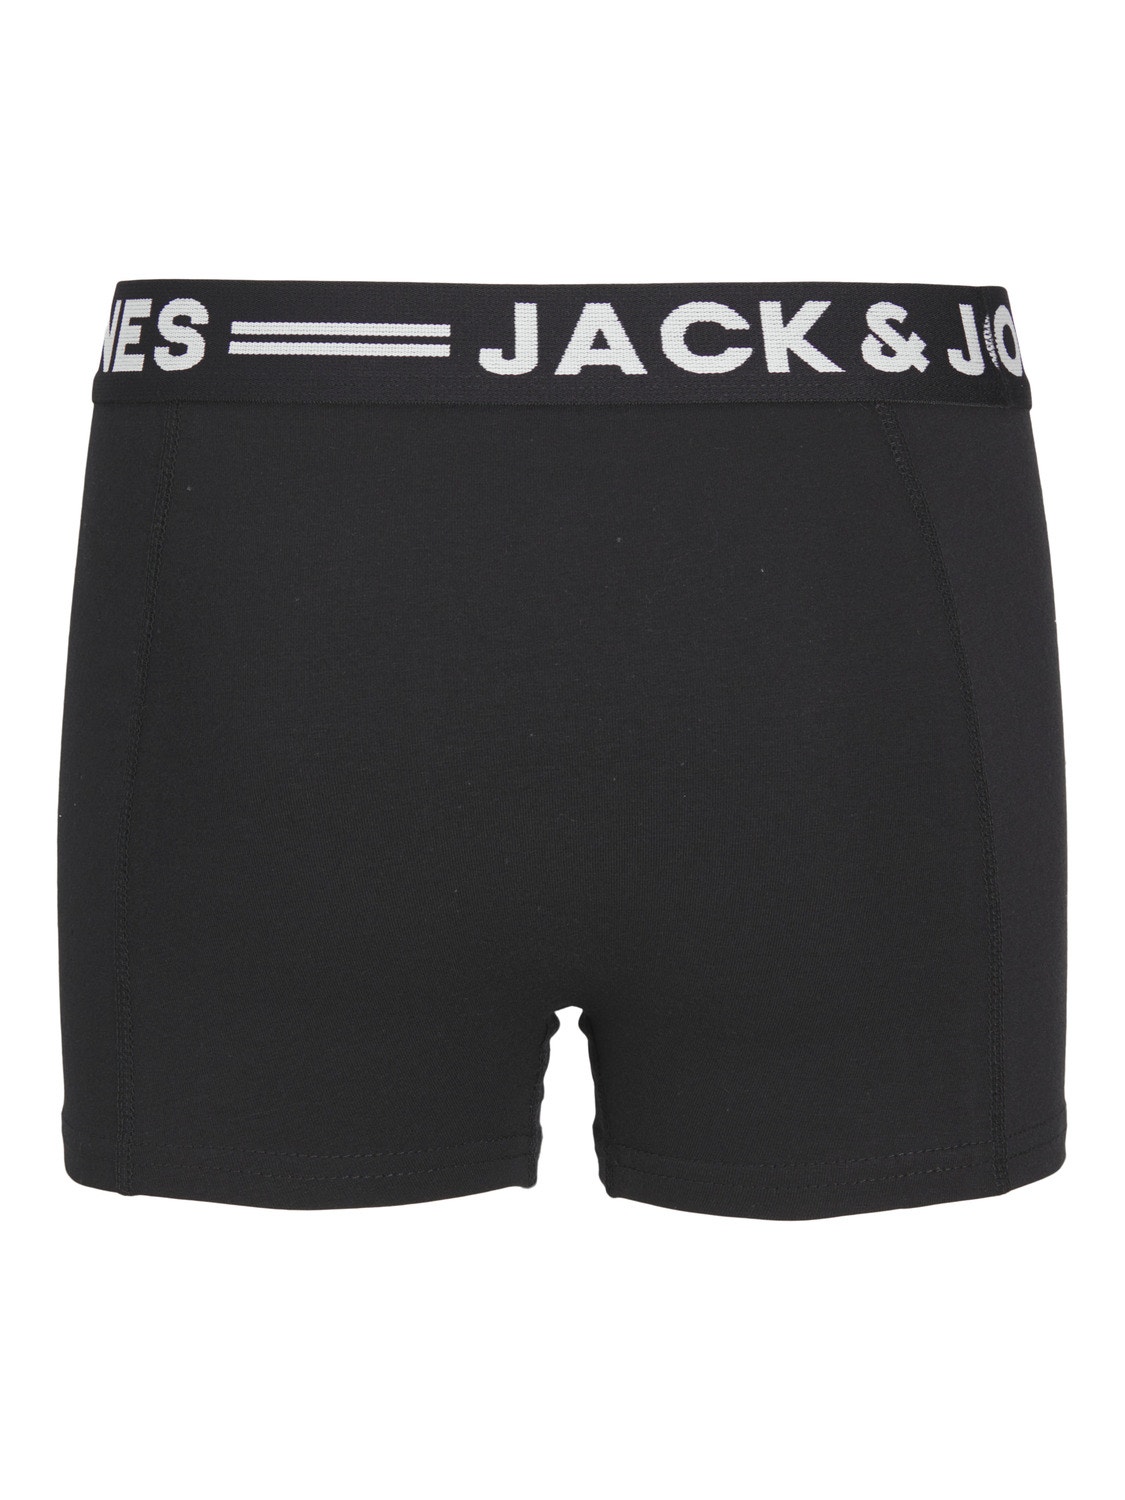 Jack & Jones 3er-pack Boxershorts Mini -Black - 12256698